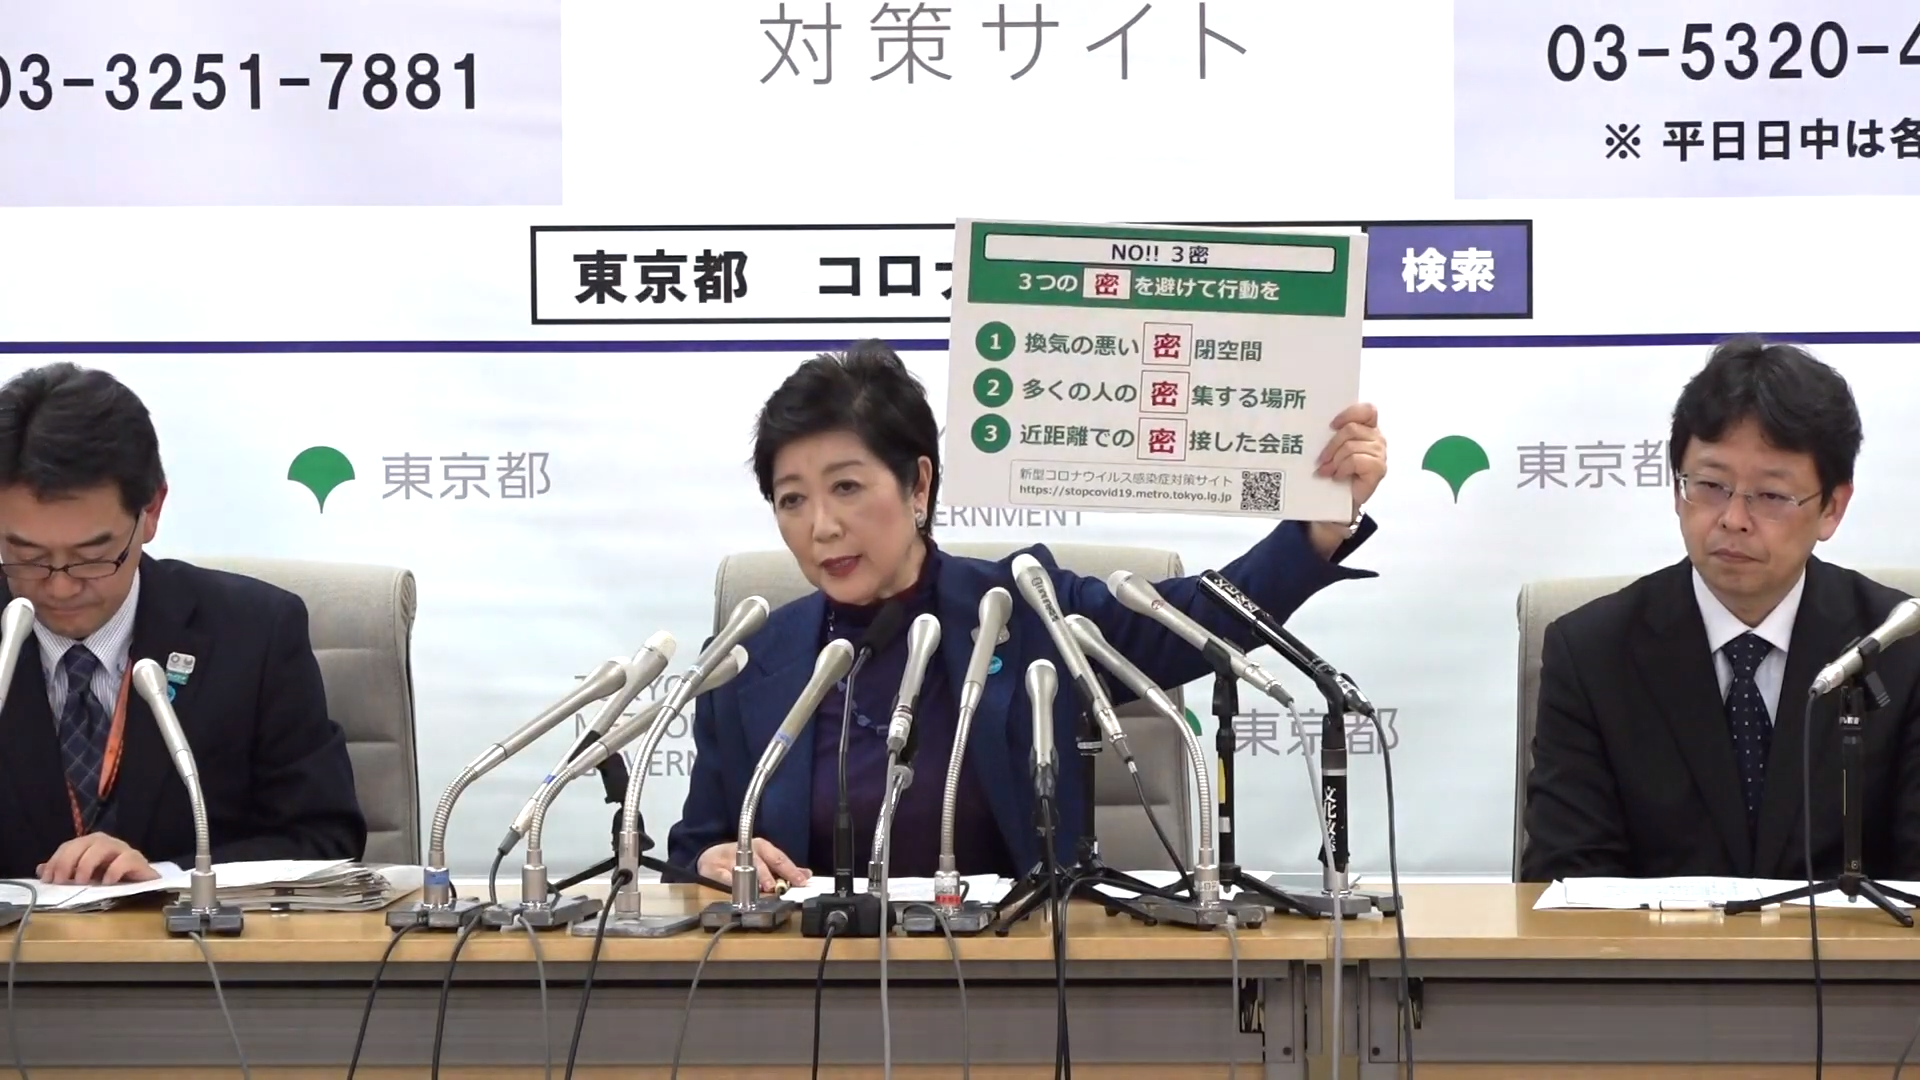 Tokios Gou­ver­neu­rin Yuri­ko Koi­ke erklärt die drei Vor­sichts­mass­nah­men, die man ein­hal­ten soll.